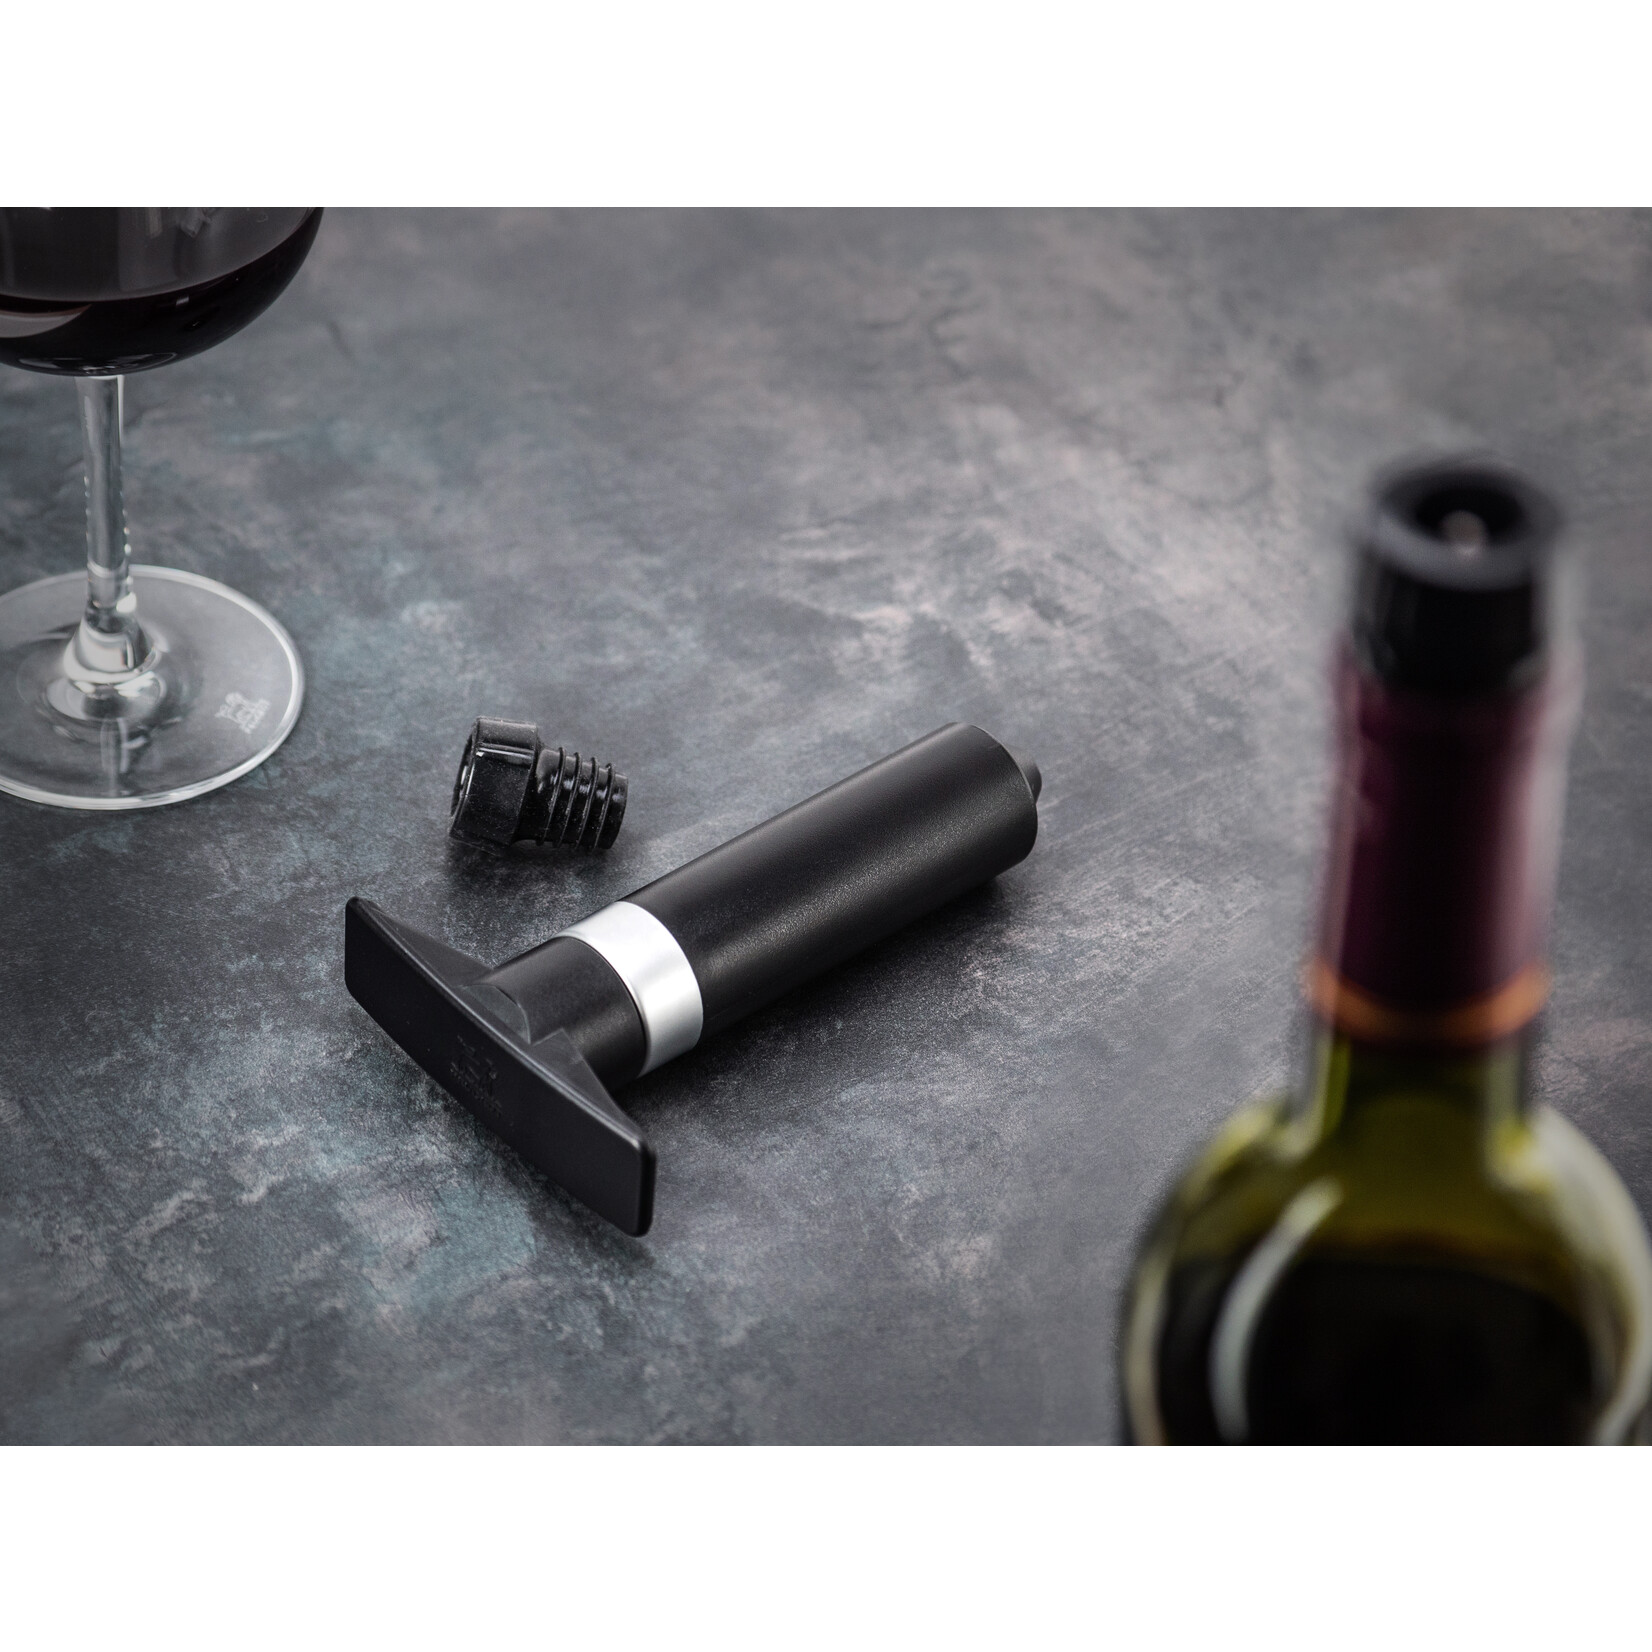 Peugeot Peugeot Epivac vacuümpomp niet-mousserende wijn, zwart, 2 doppen